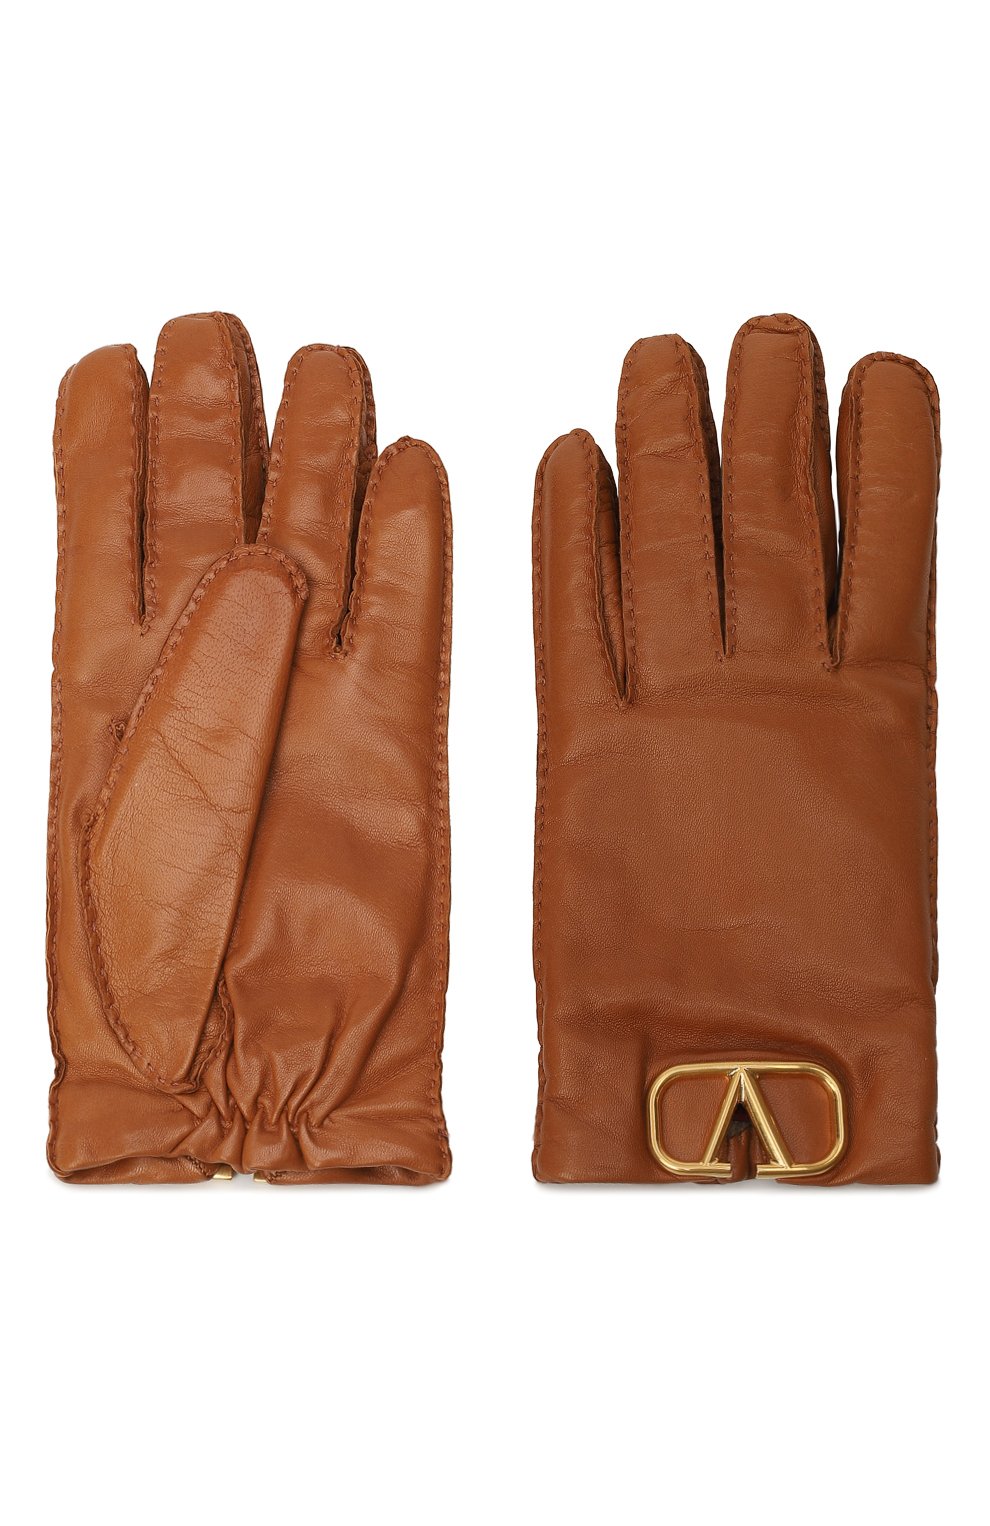 Кожаные перчатки | Valentino | Коричневый - 2